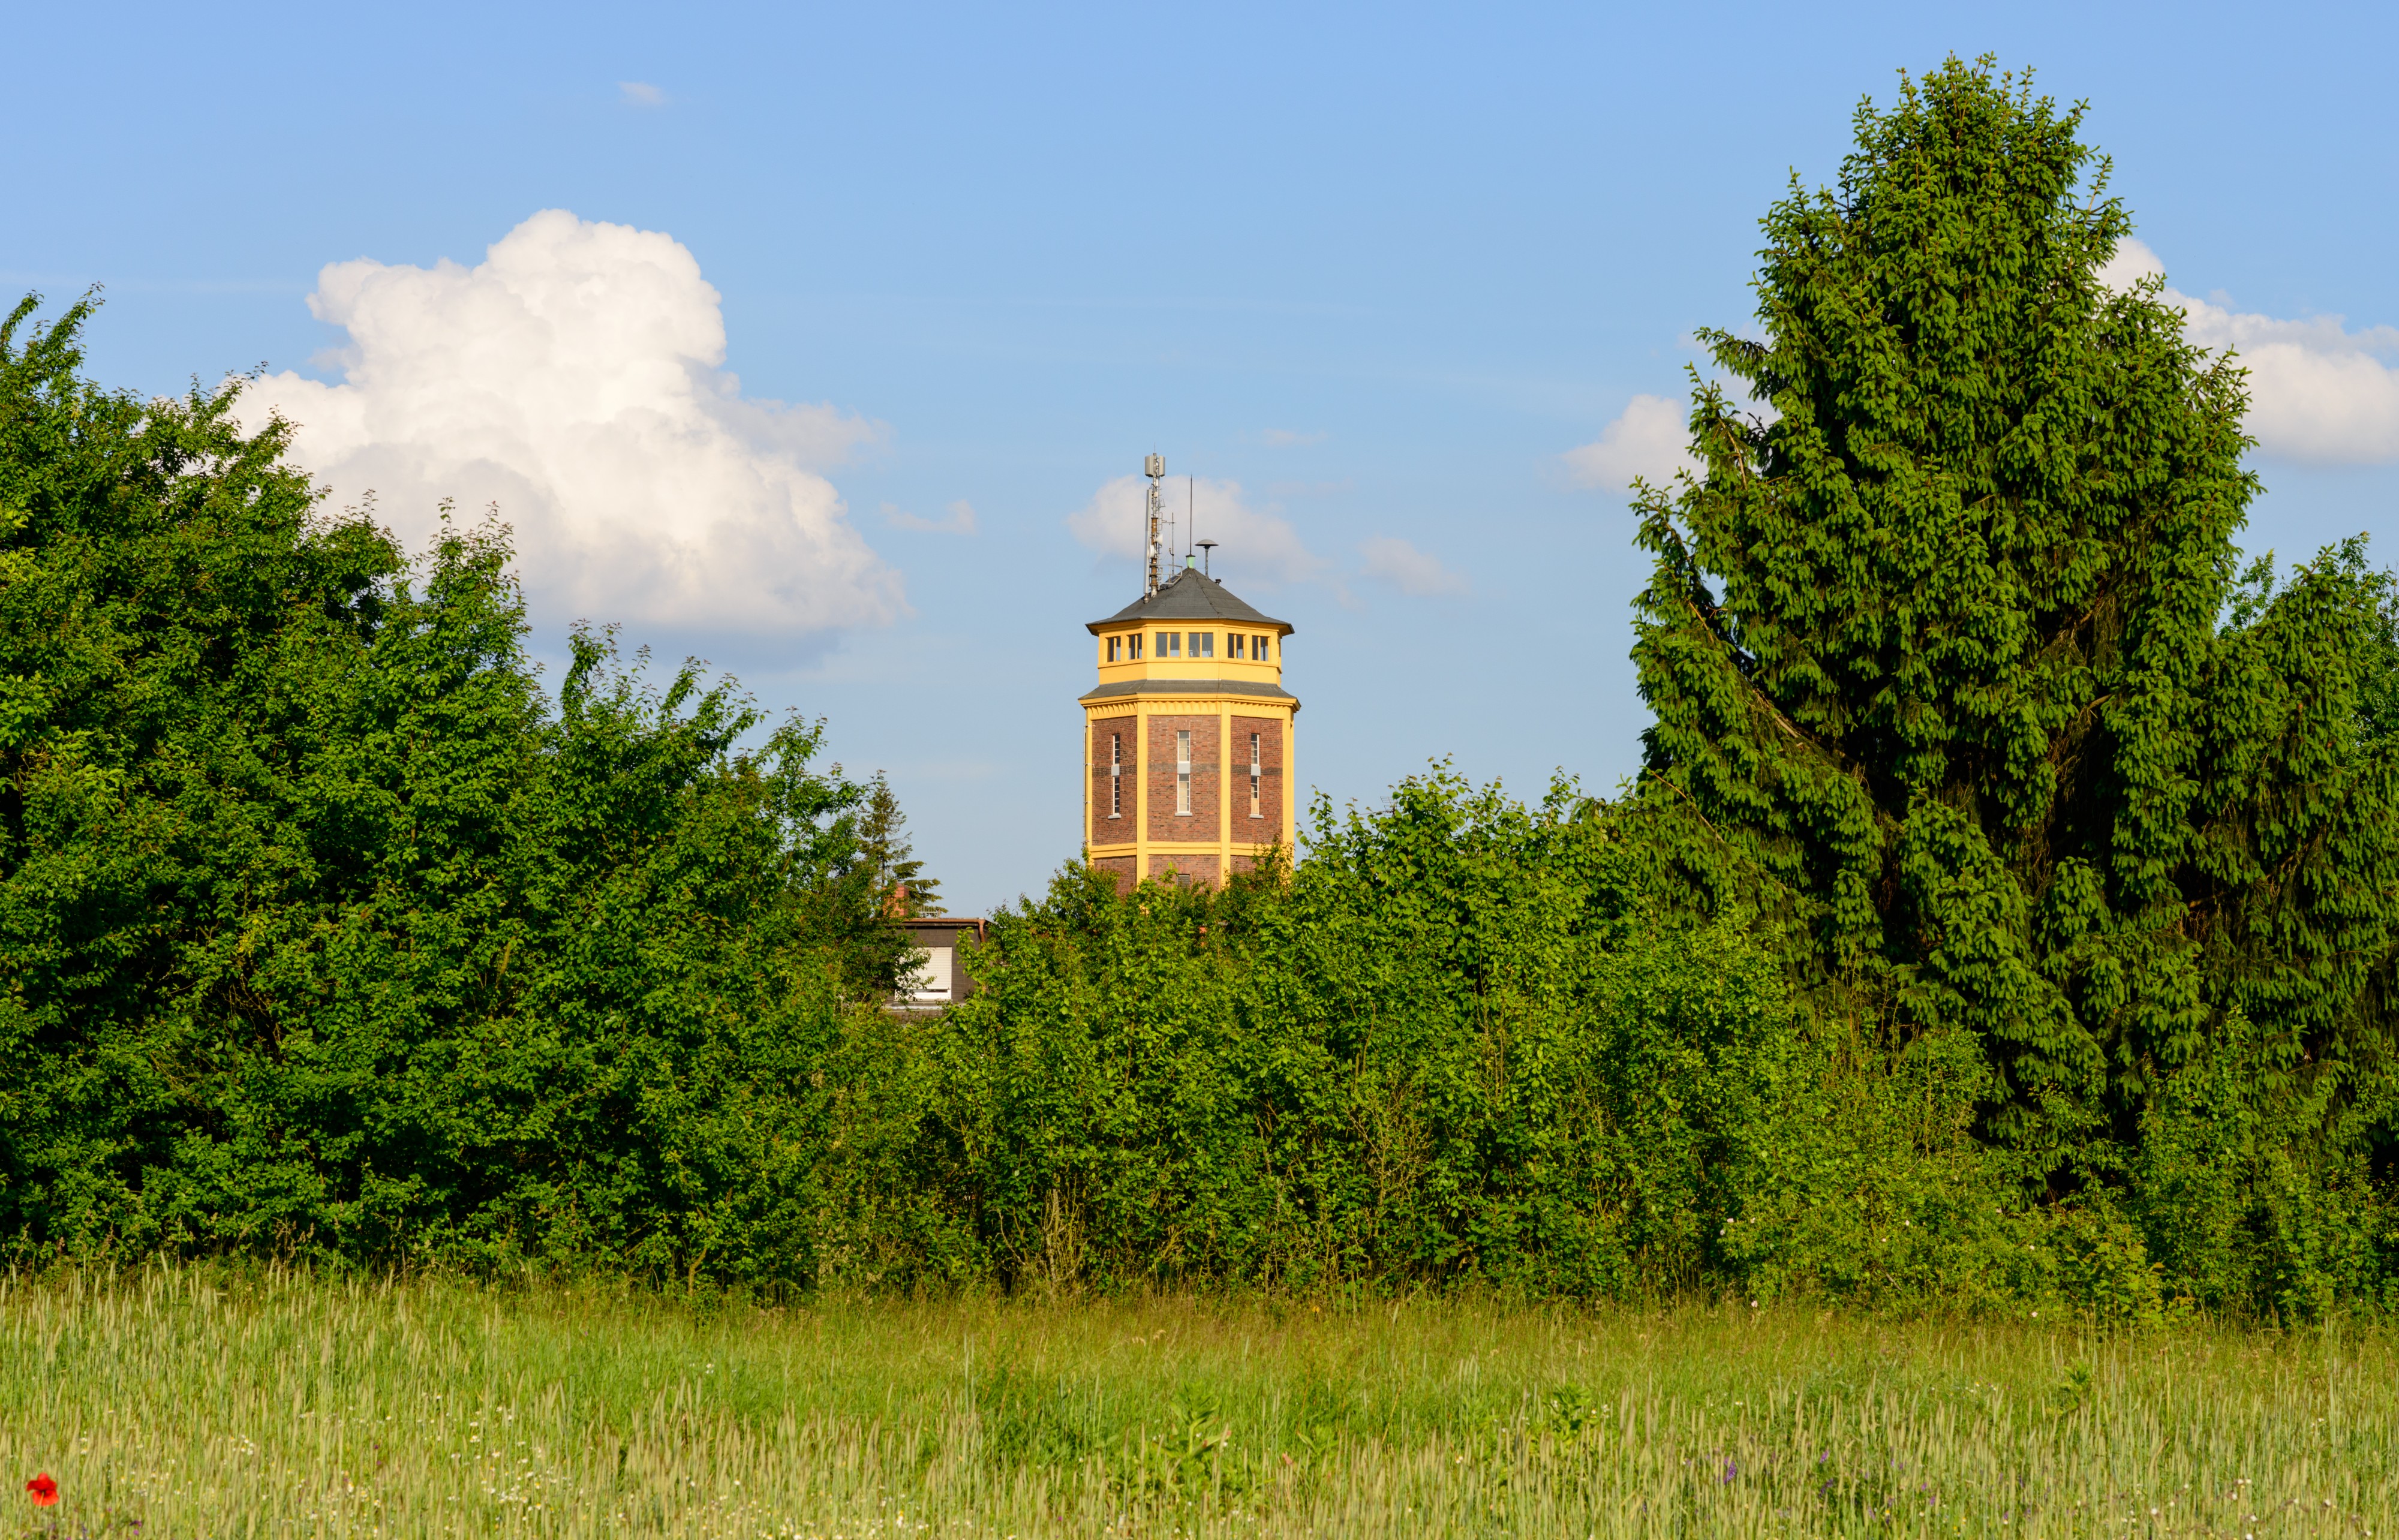 Wasserturm Mörfelden - Mörfelden-Walldorf - water tower - château d'eau - 09